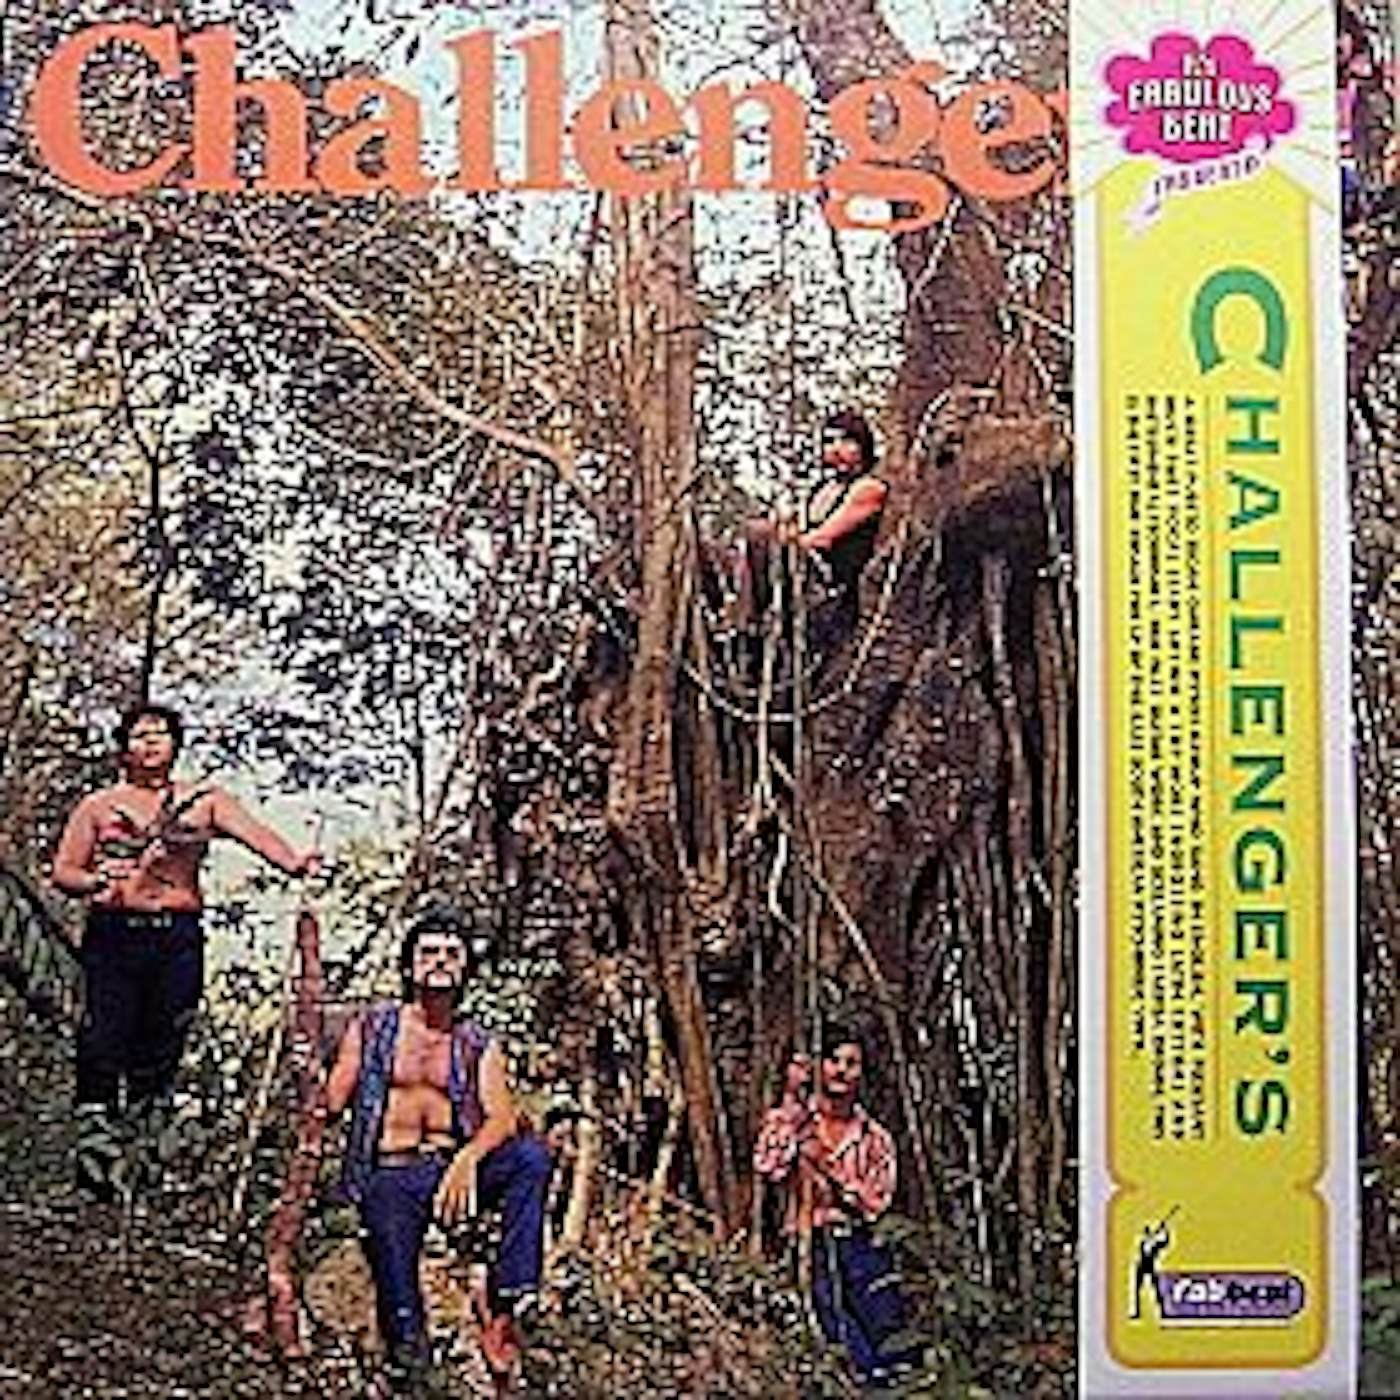 The Challengers Vinyl Record